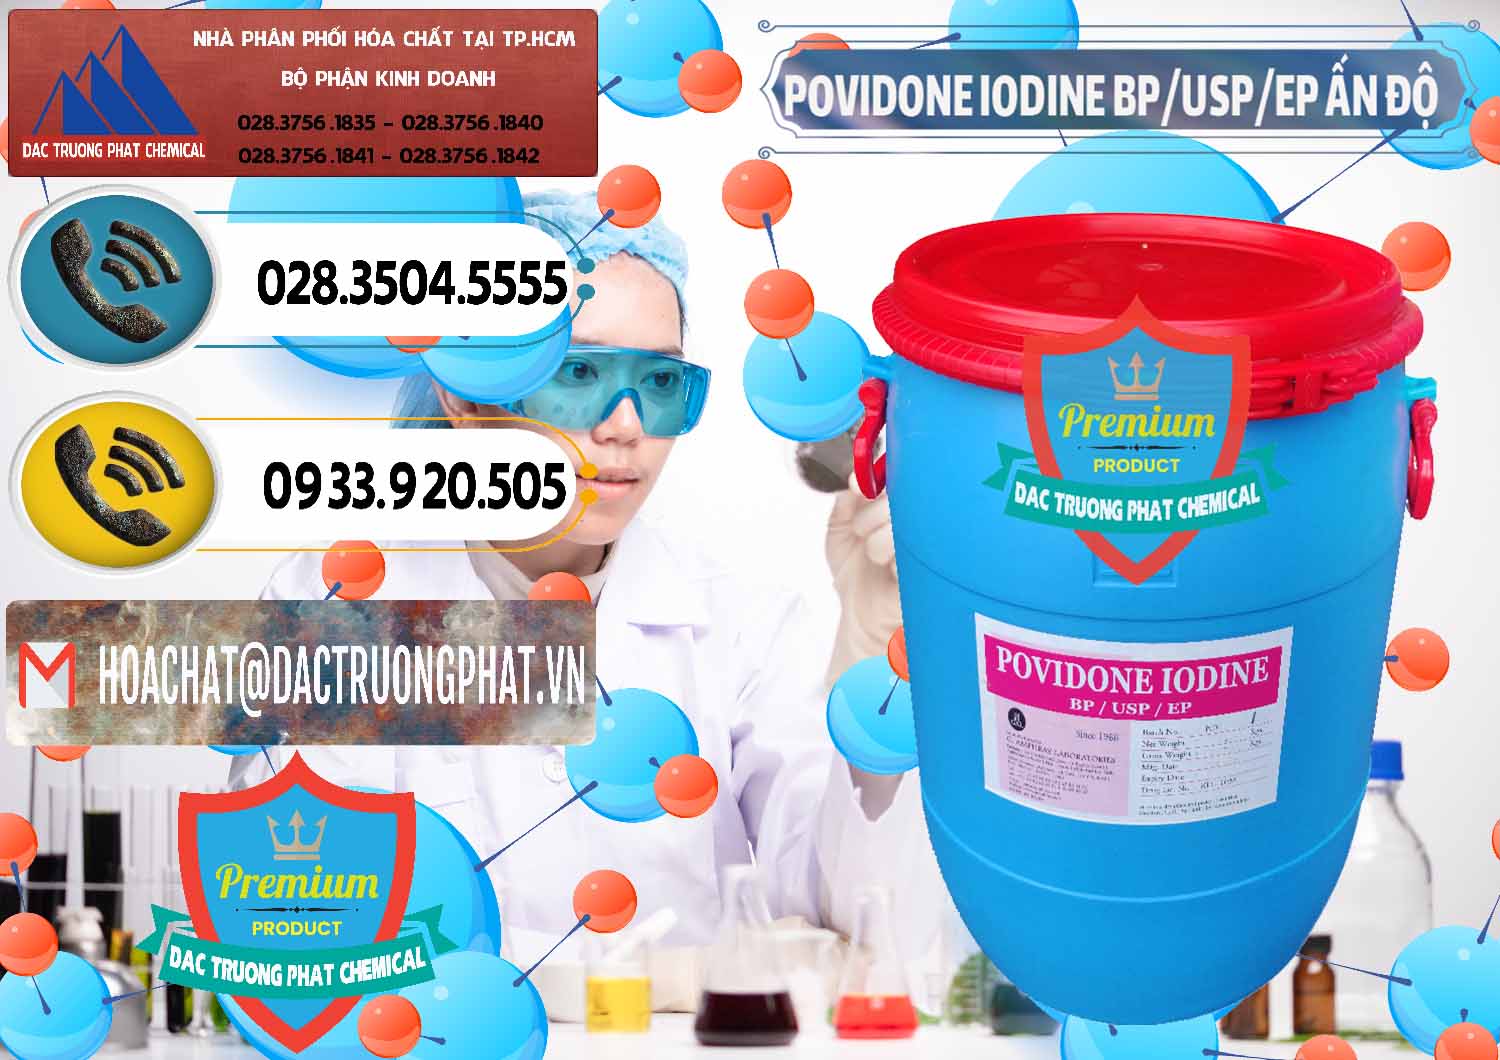 Công ty chuyên bán & phân phối Povidone Iodine BP USP EP Ấn Độ India - 0318 - Nơi chuyên cung cấp & nhập khẩu hóa chất tại TP.HCM - hoachatdetnhuom.vn